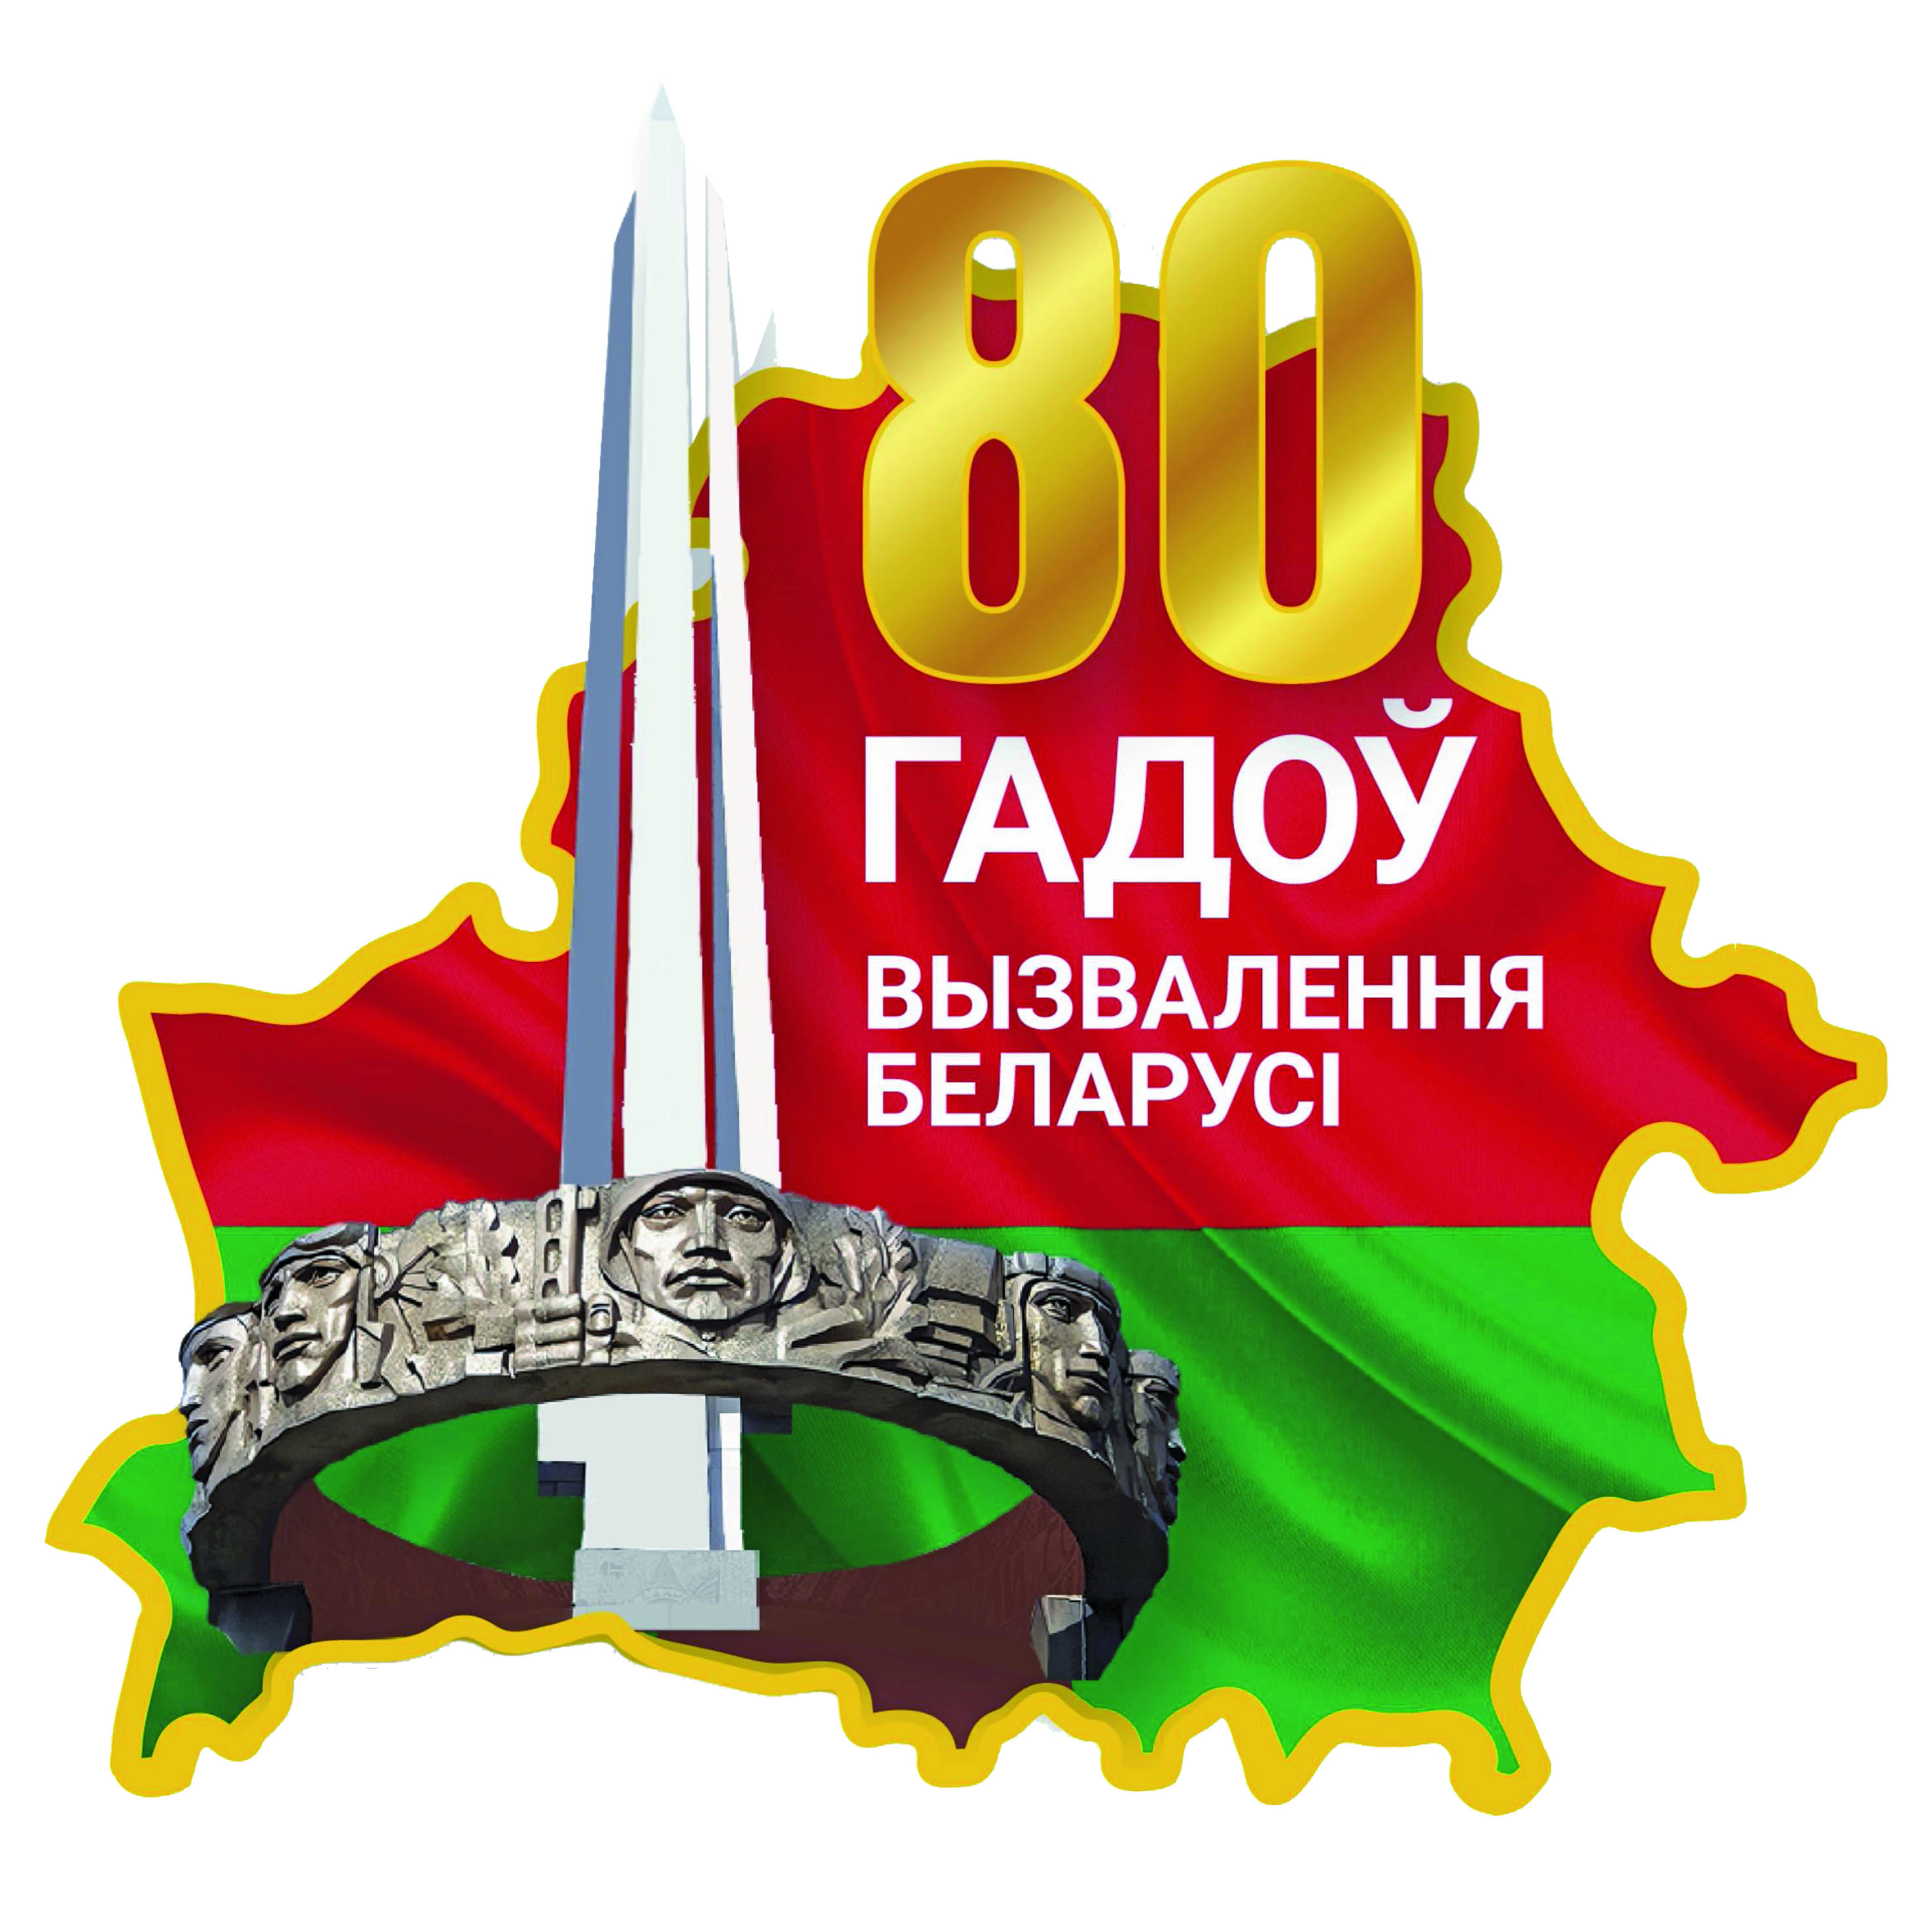 80 лет особождения Республики Беларусь